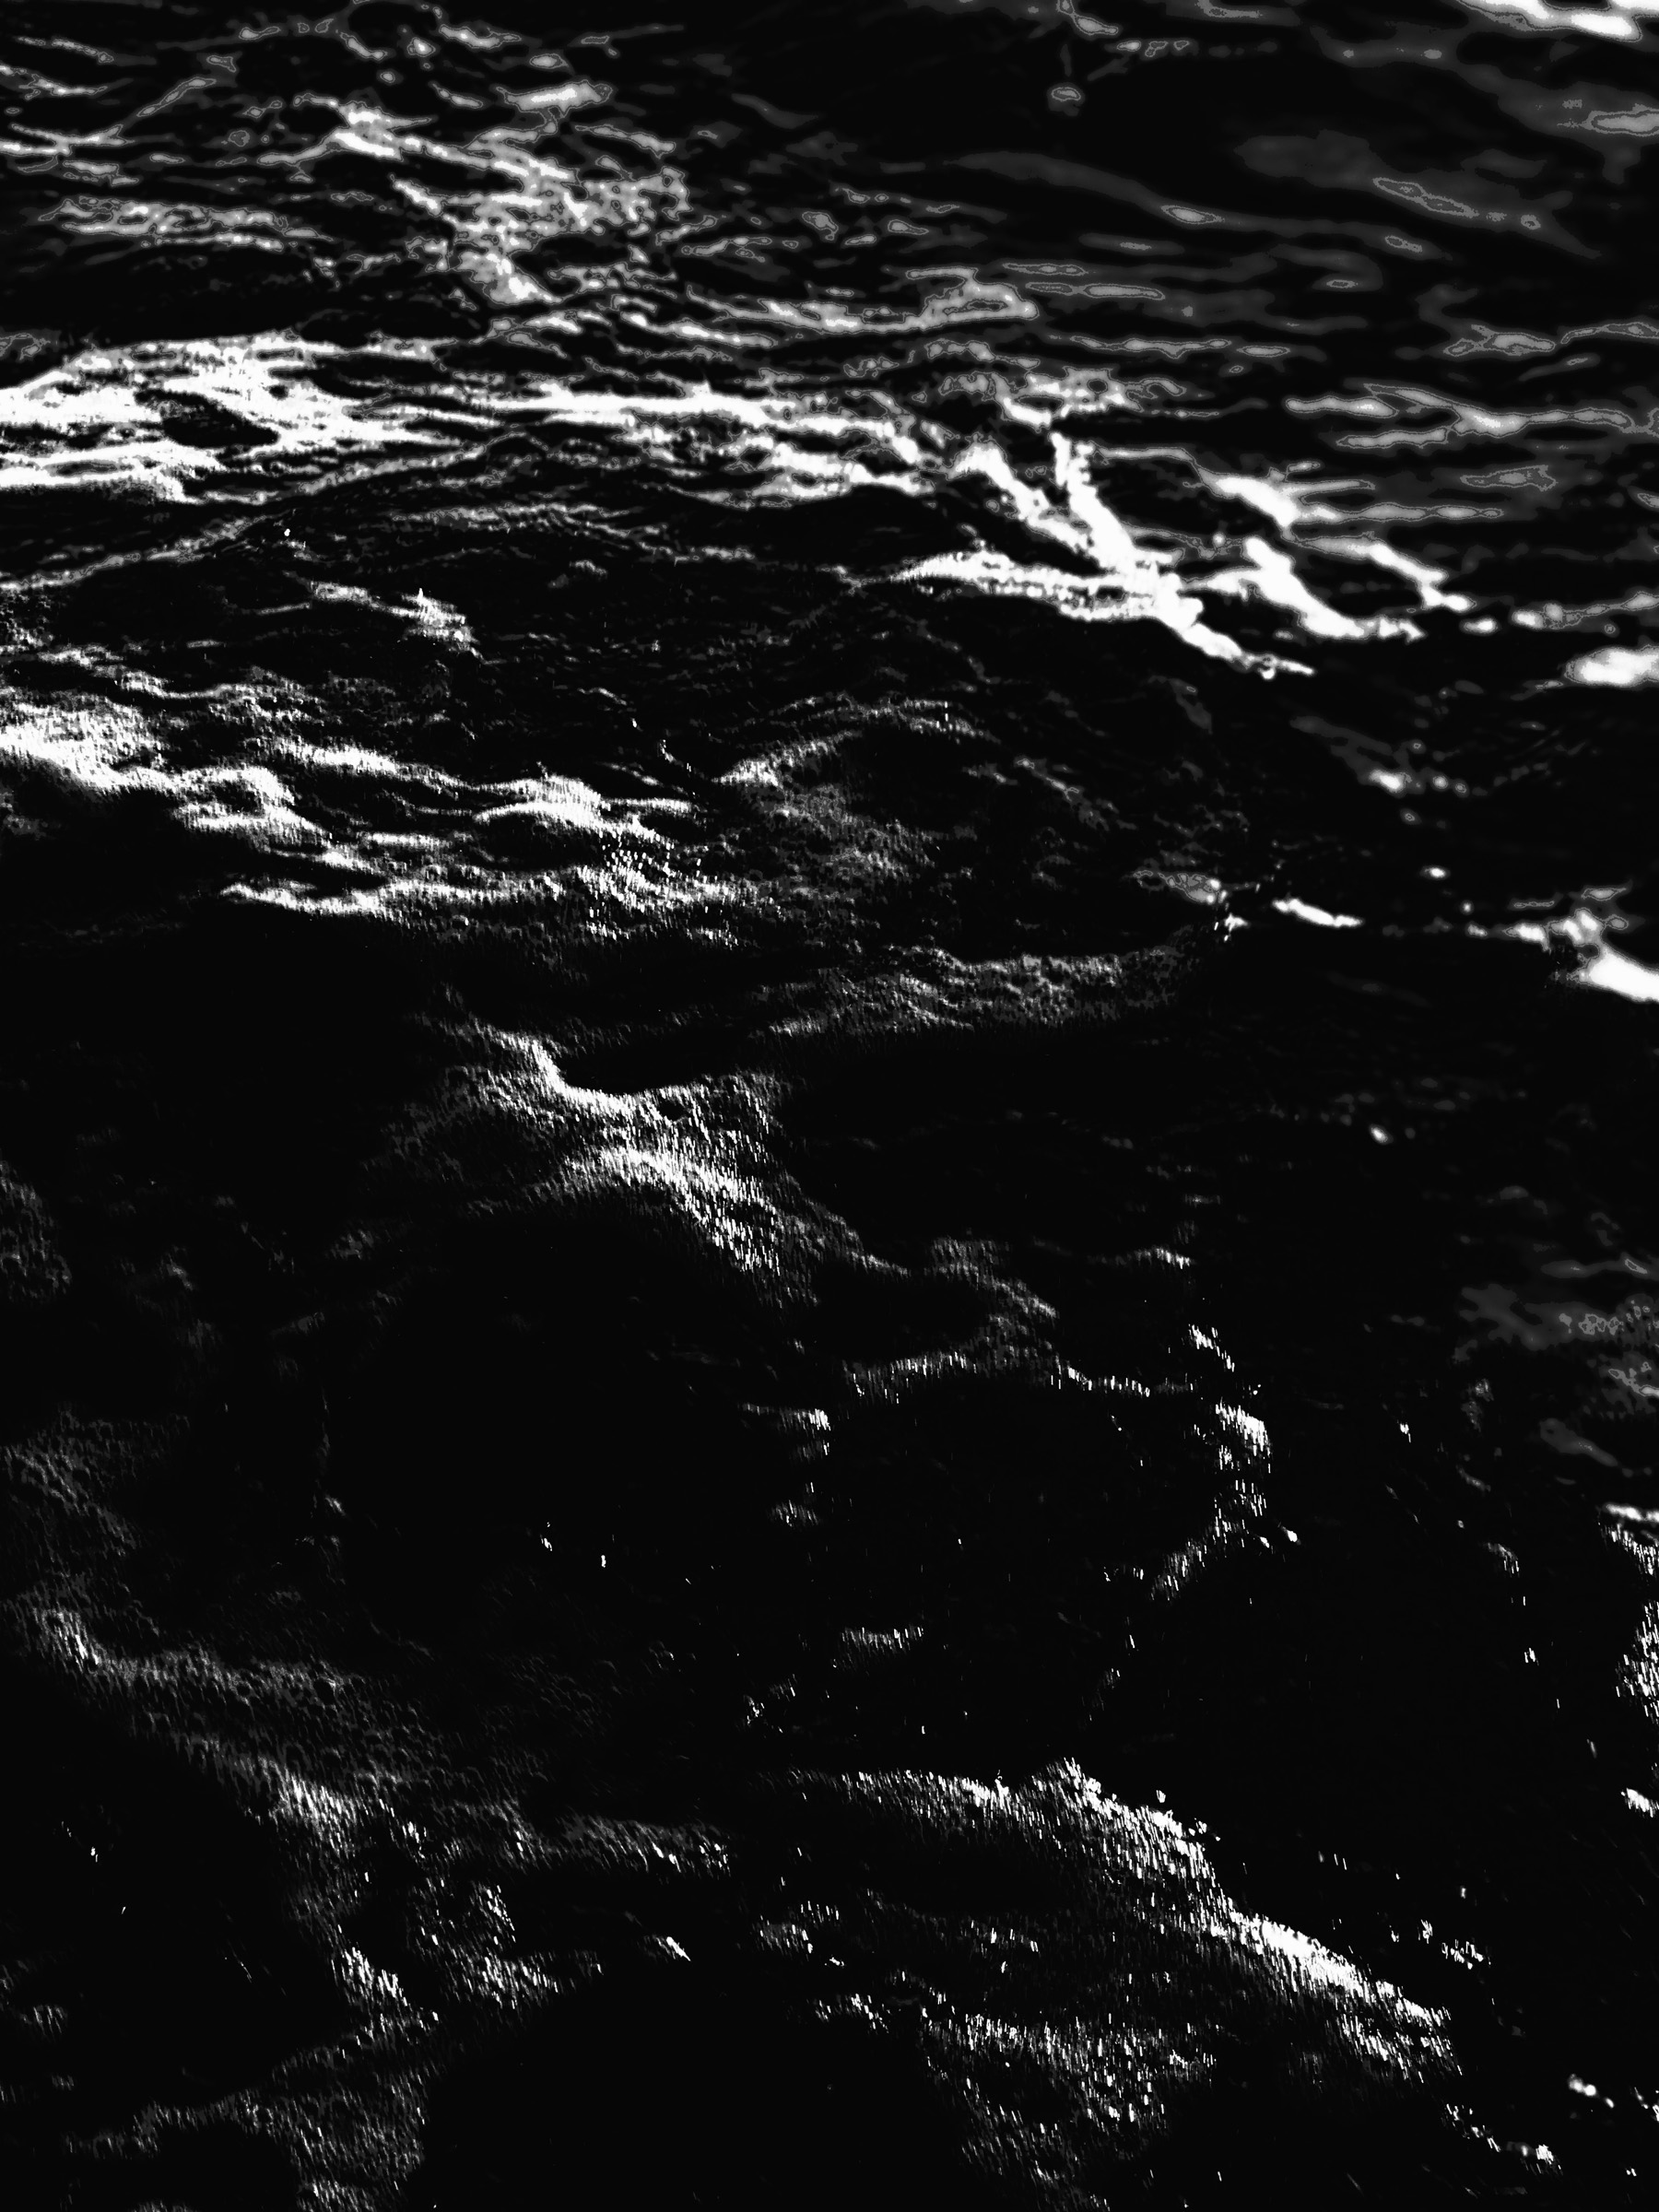 Dark Water 4 by Alex Schaefer